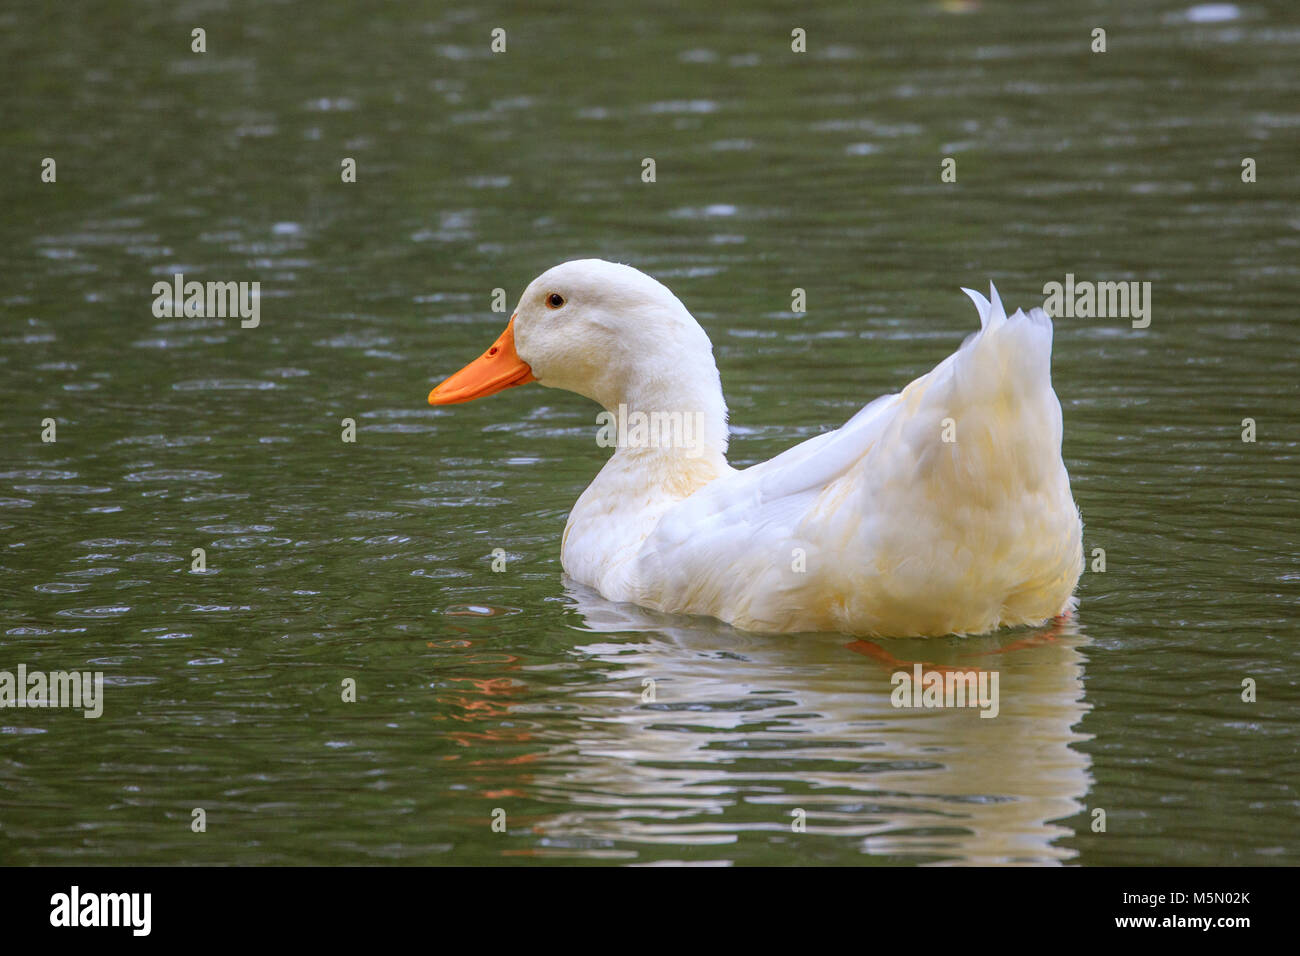 Addomesticazione Mallard duck su un laghetto. Foto Stock